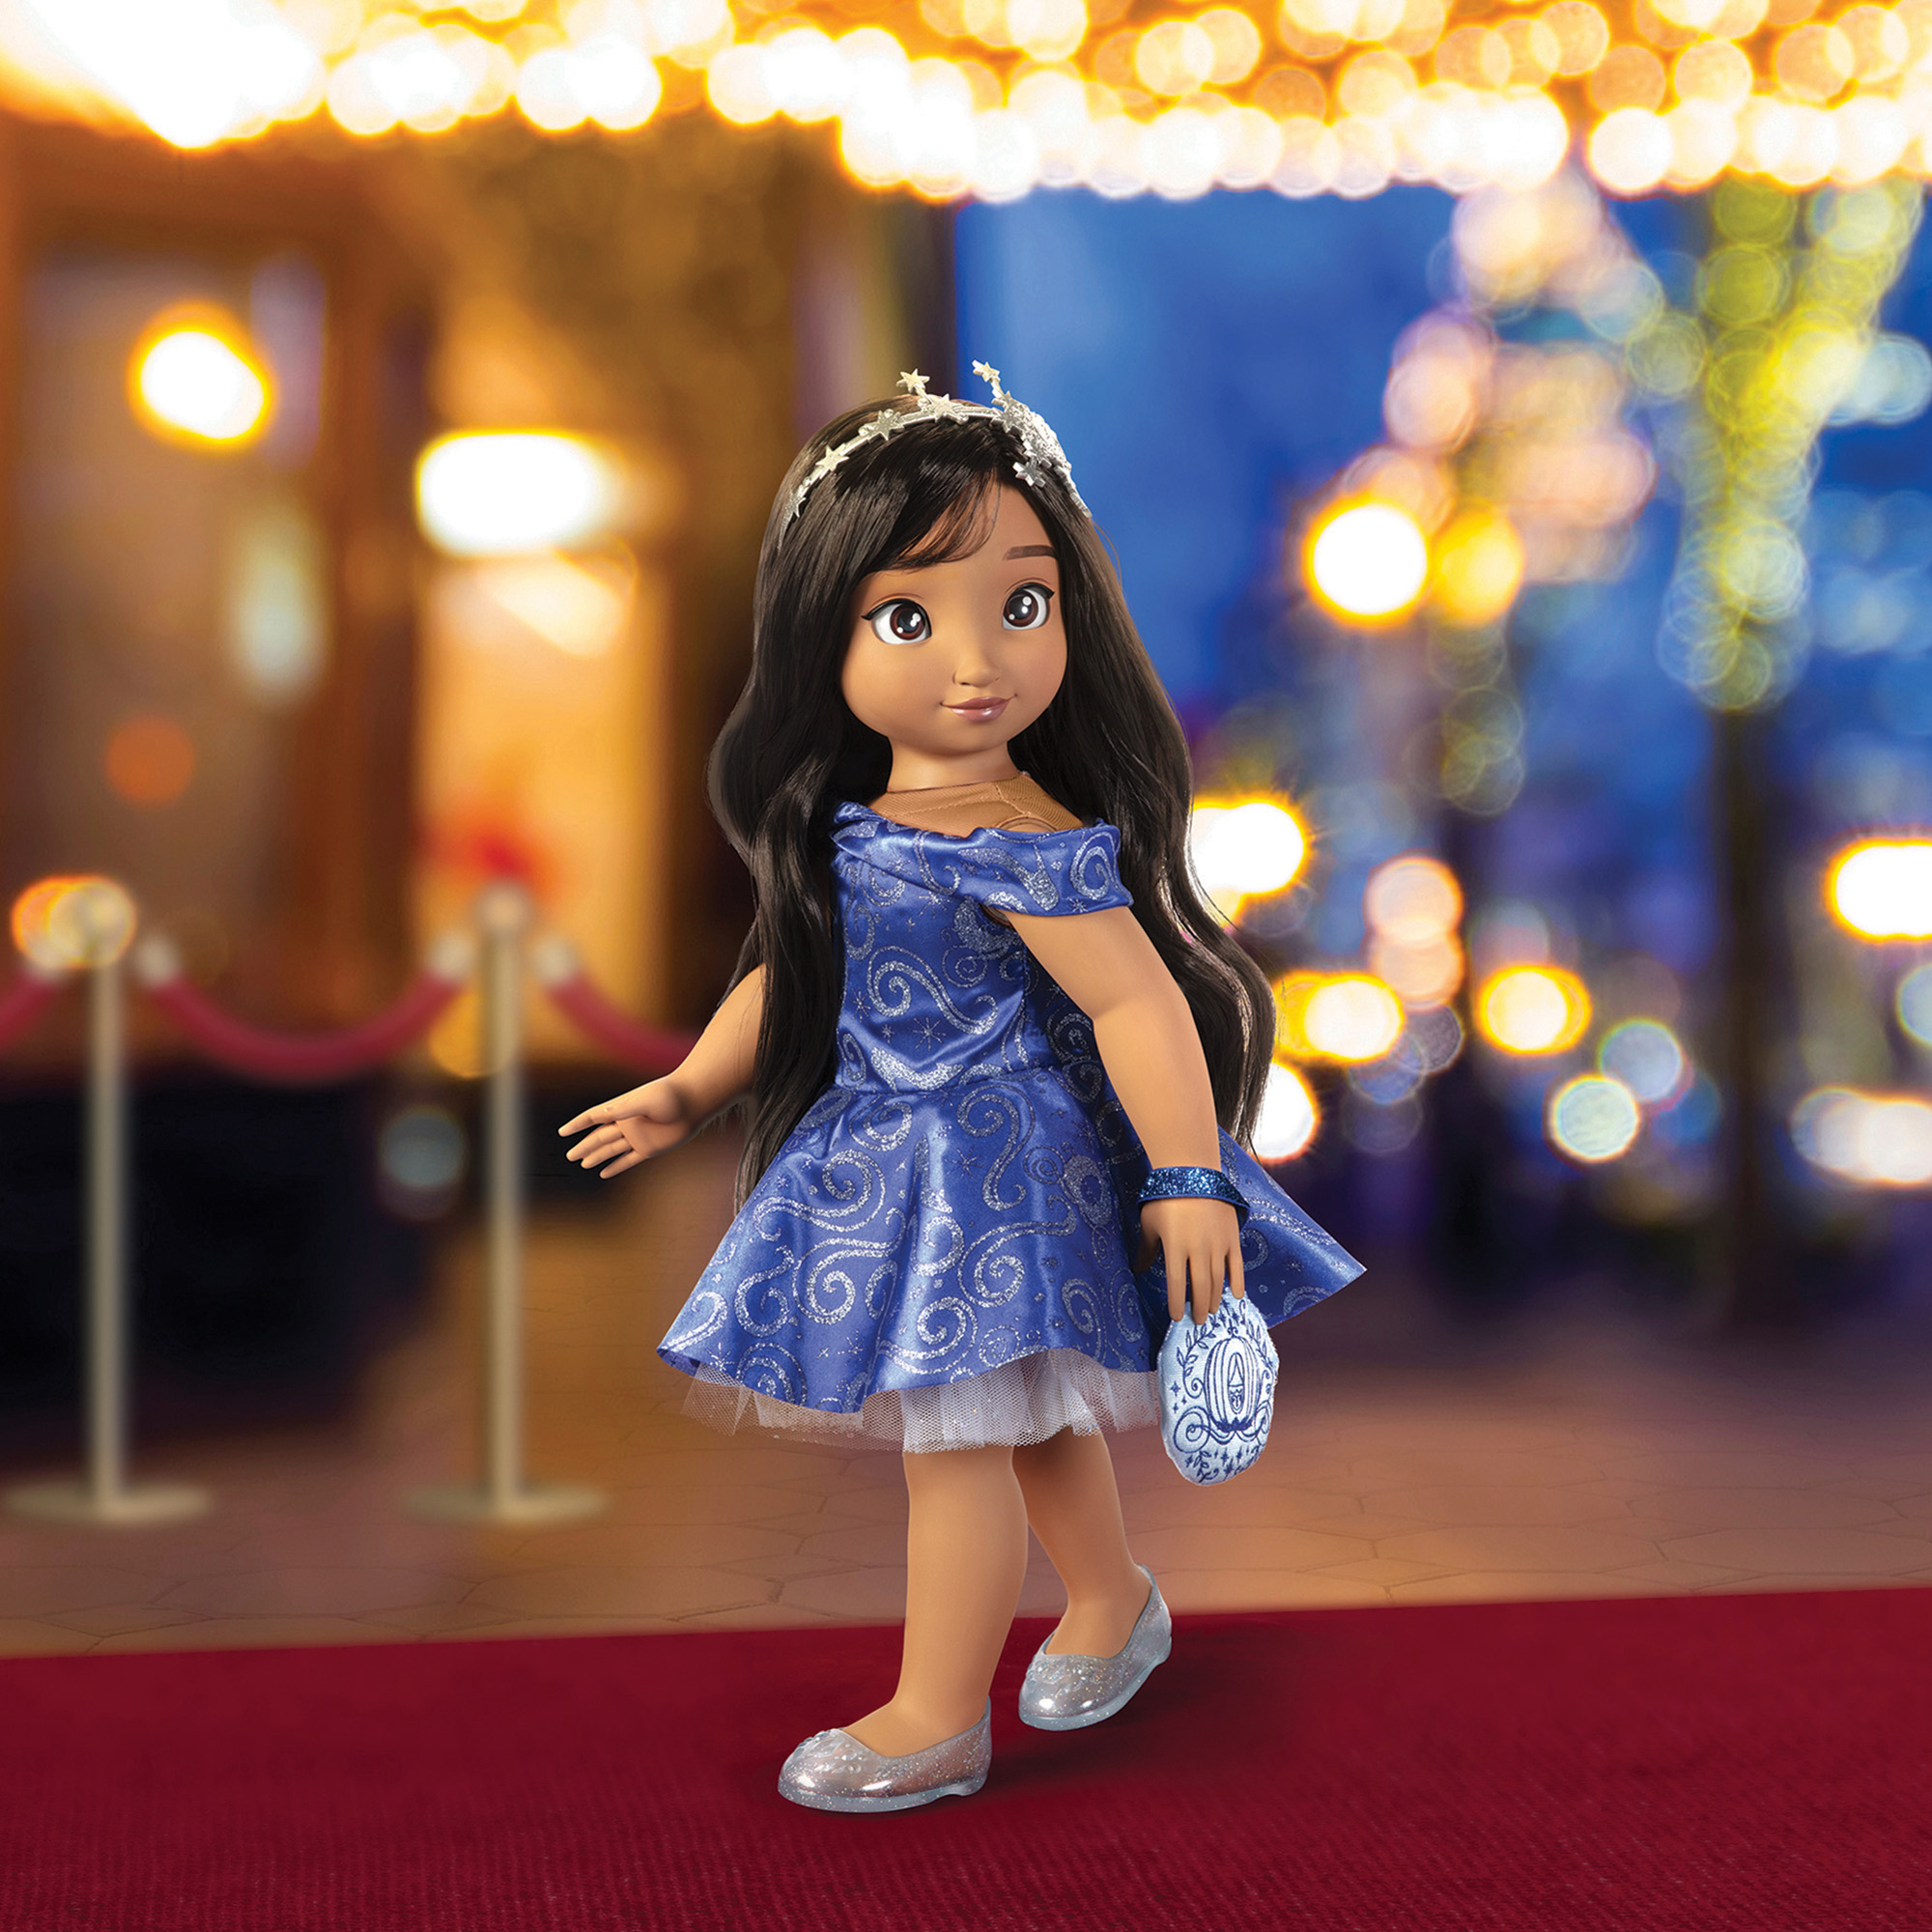 Bambola ispirata a Cenerentola con capelli lunghi e accessori 46 cm - Disney ILY4EVER